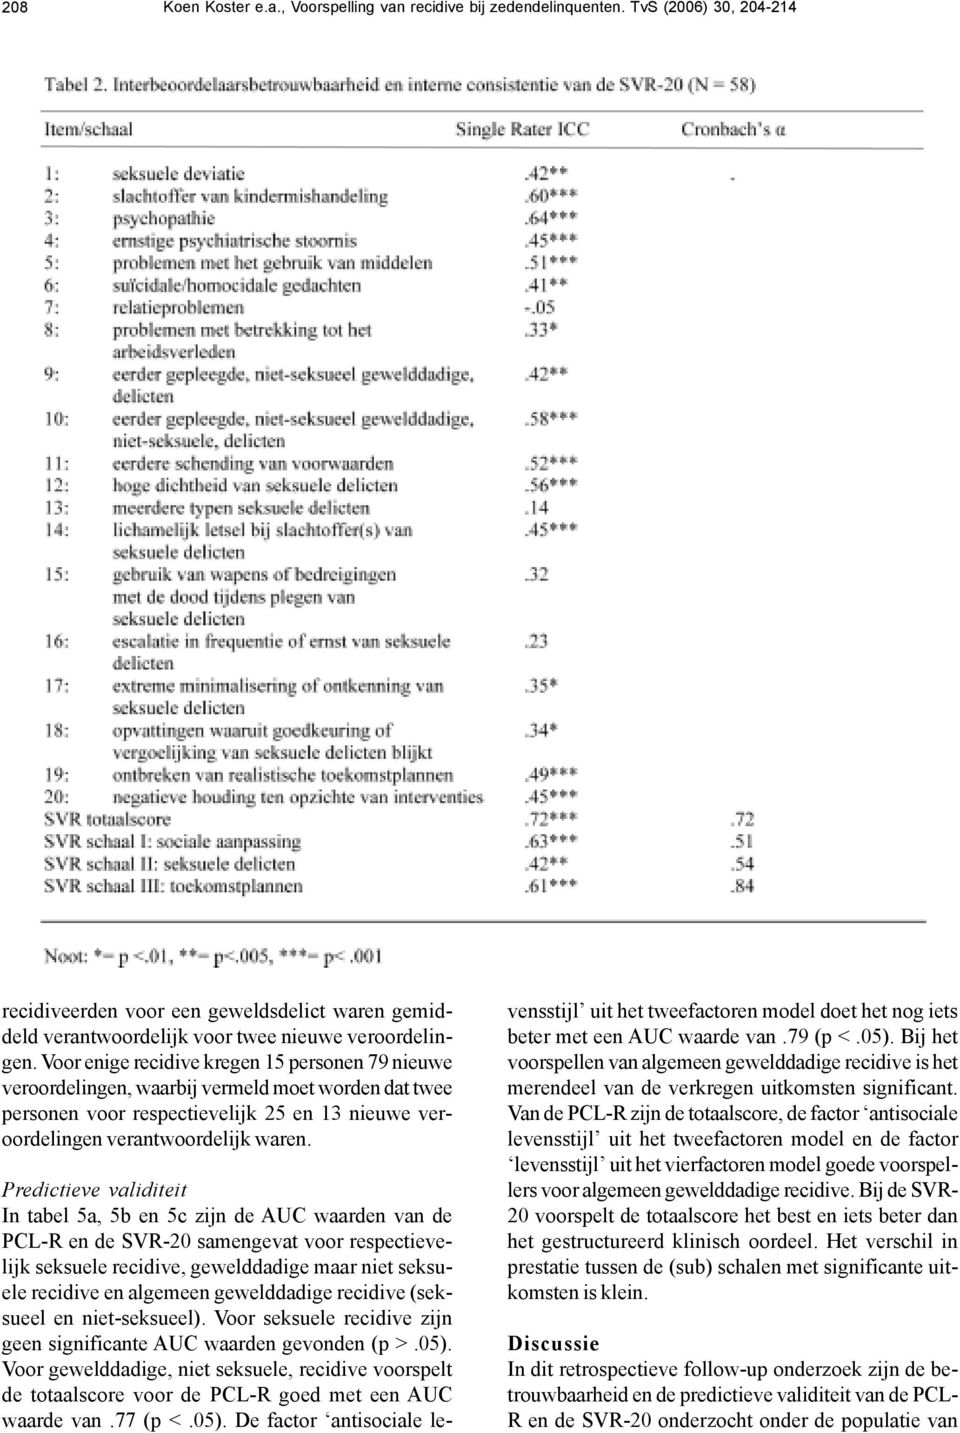 Predictieve validiteit In tabel 5a, 5b en 5c zijn de AUC waarden van de PCL-R en de SVR-20 samengevat voor respectievelijk seksuele recidive, gewelddadige maar niet seksuele recidive en algemeen